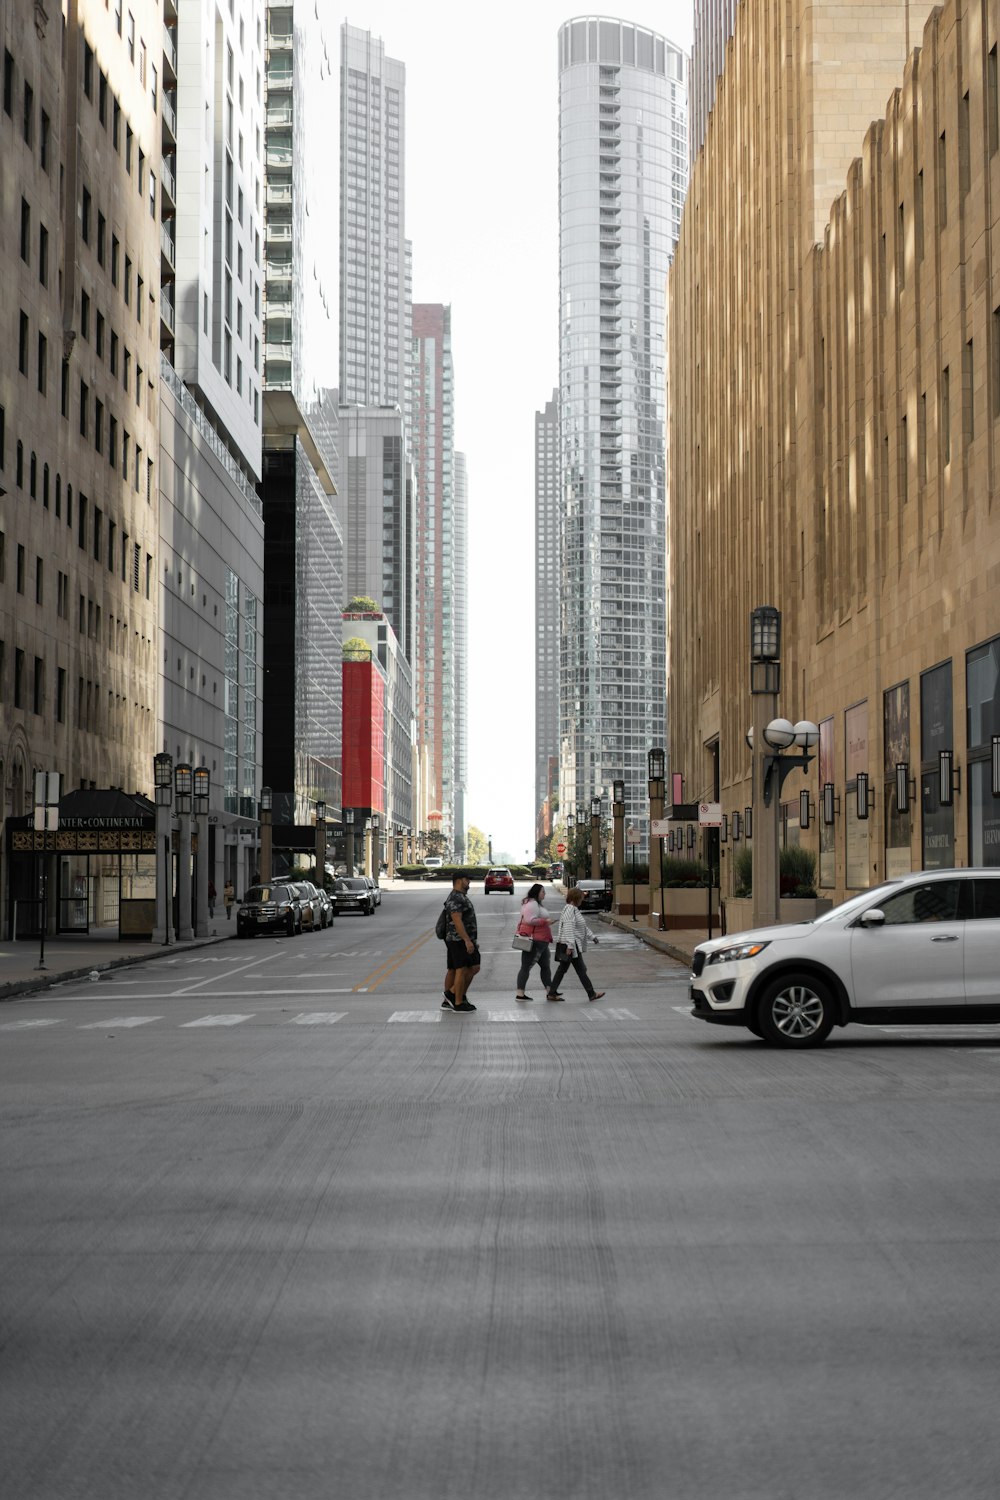 people walking on a street between tall buildings